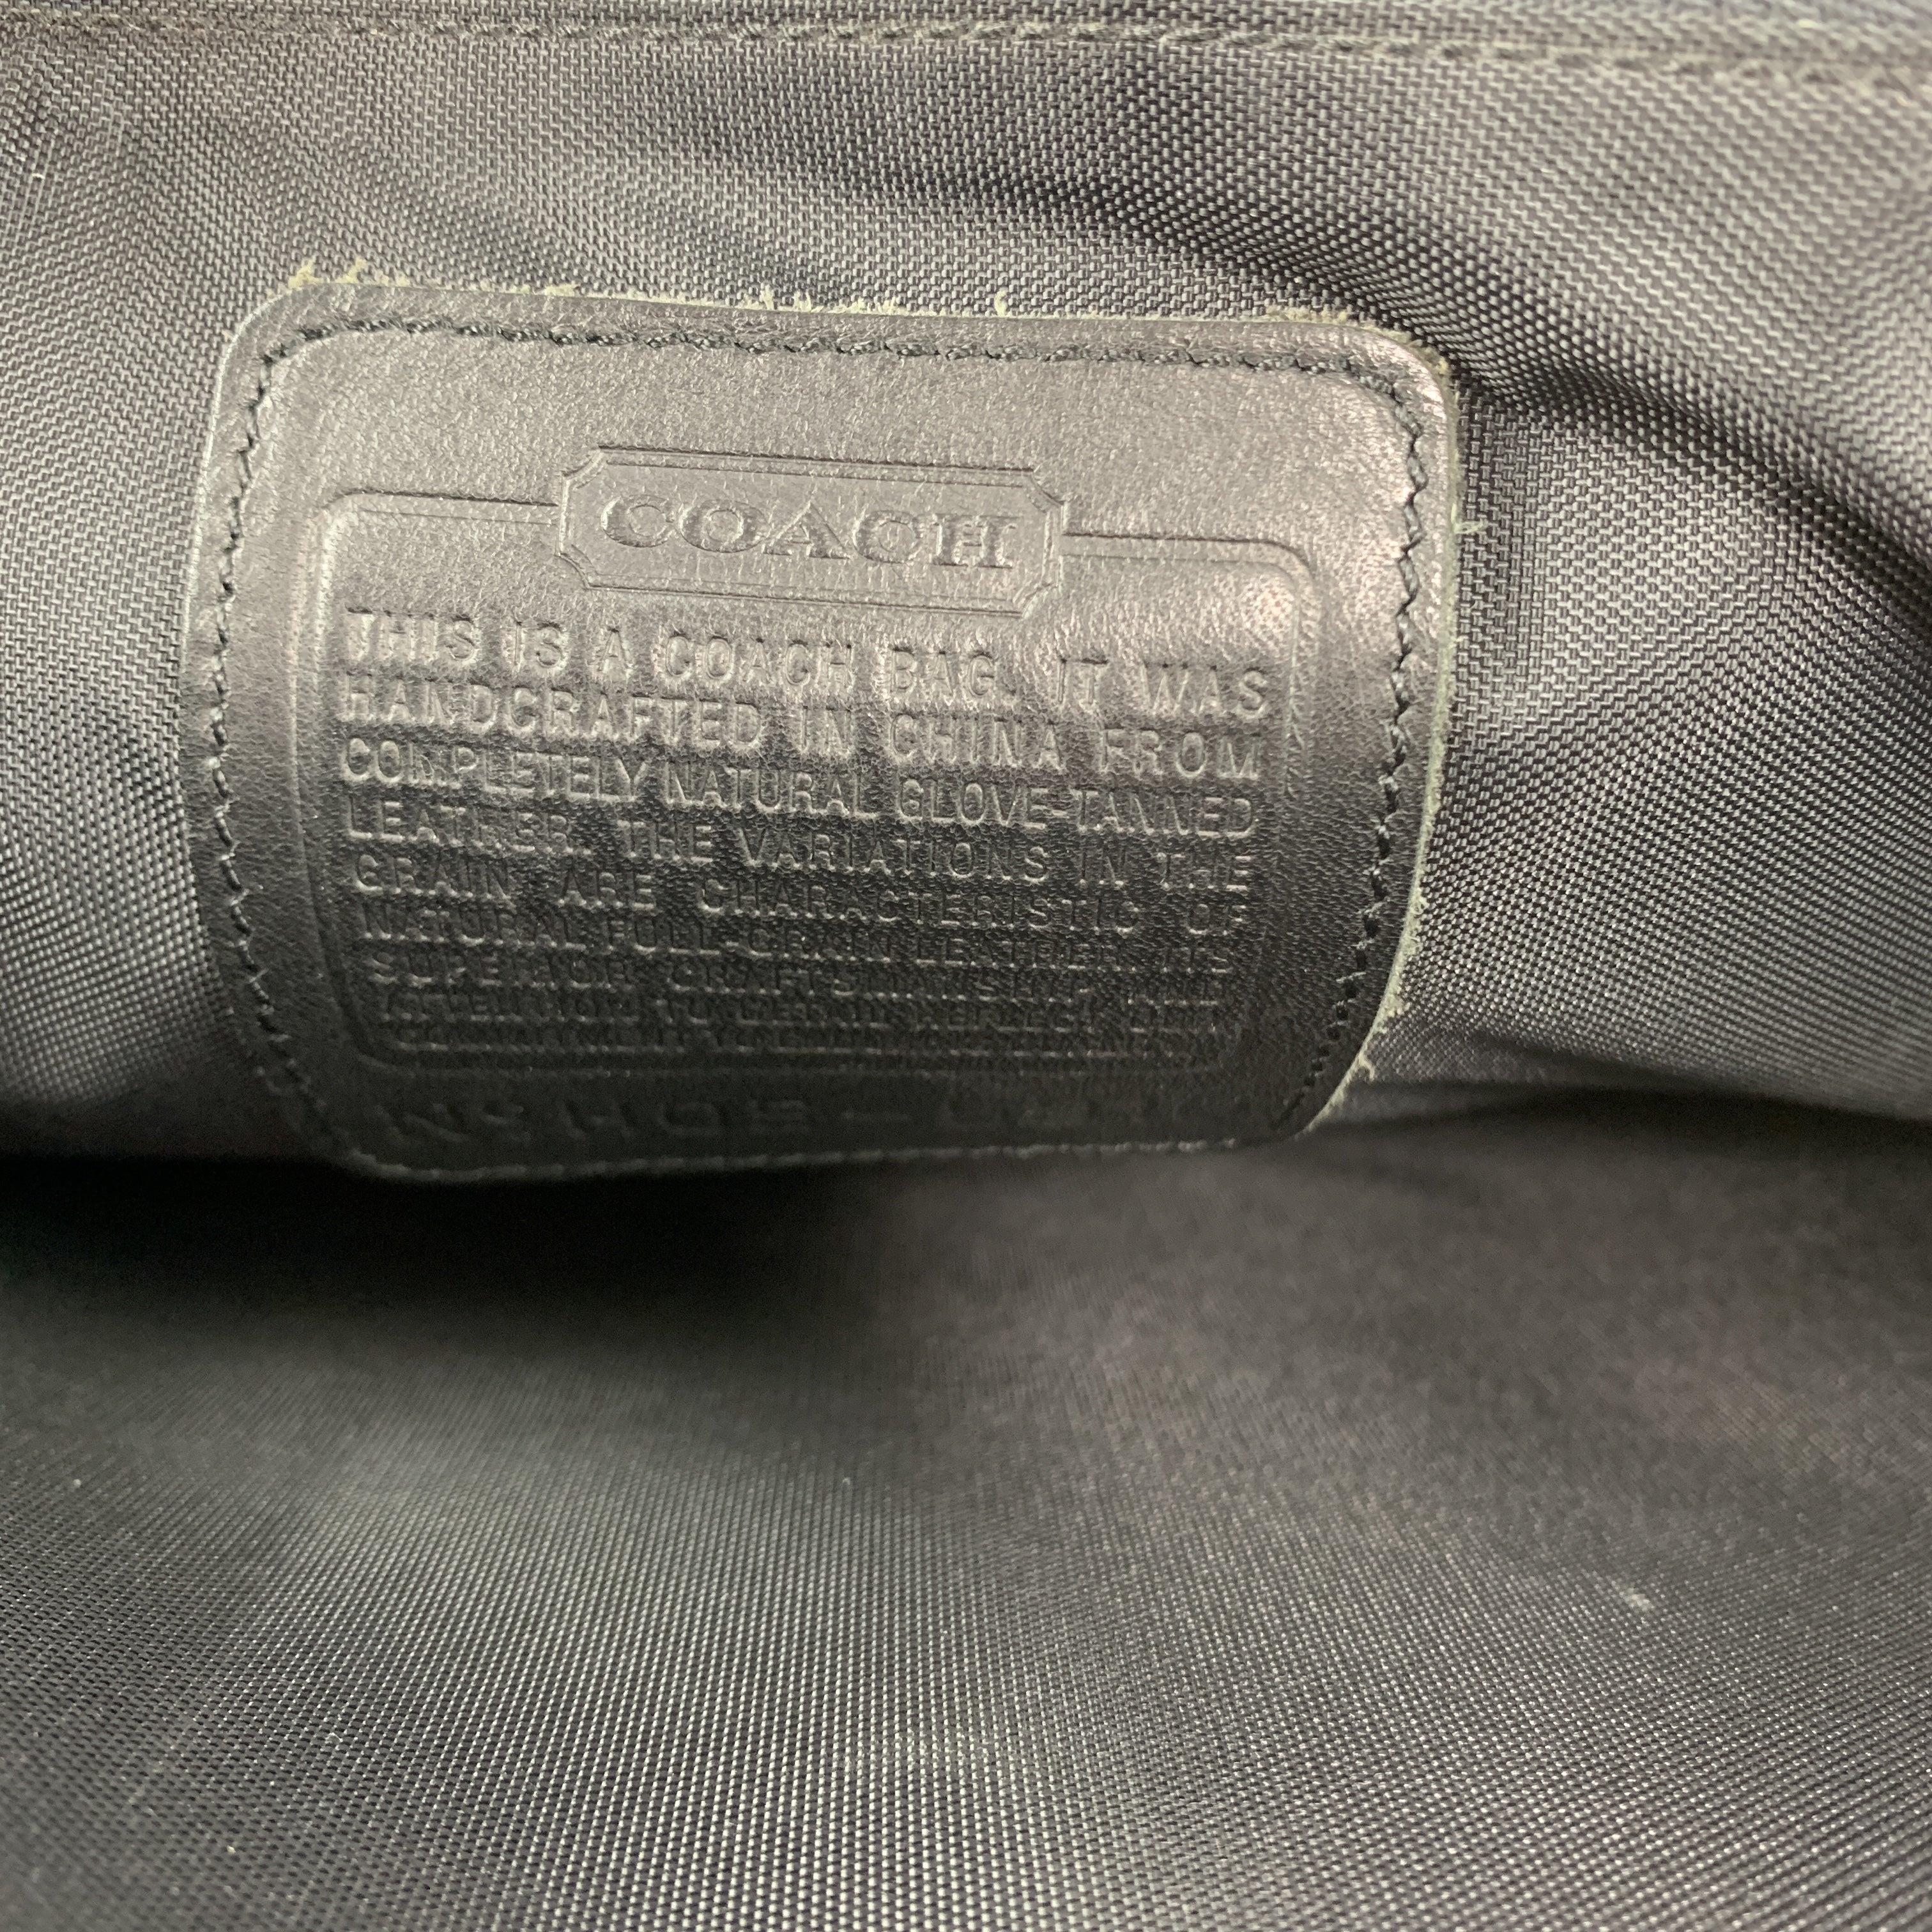 COACH Black Leather Shoulder Strap Double Closure Briefcase For Sale 6